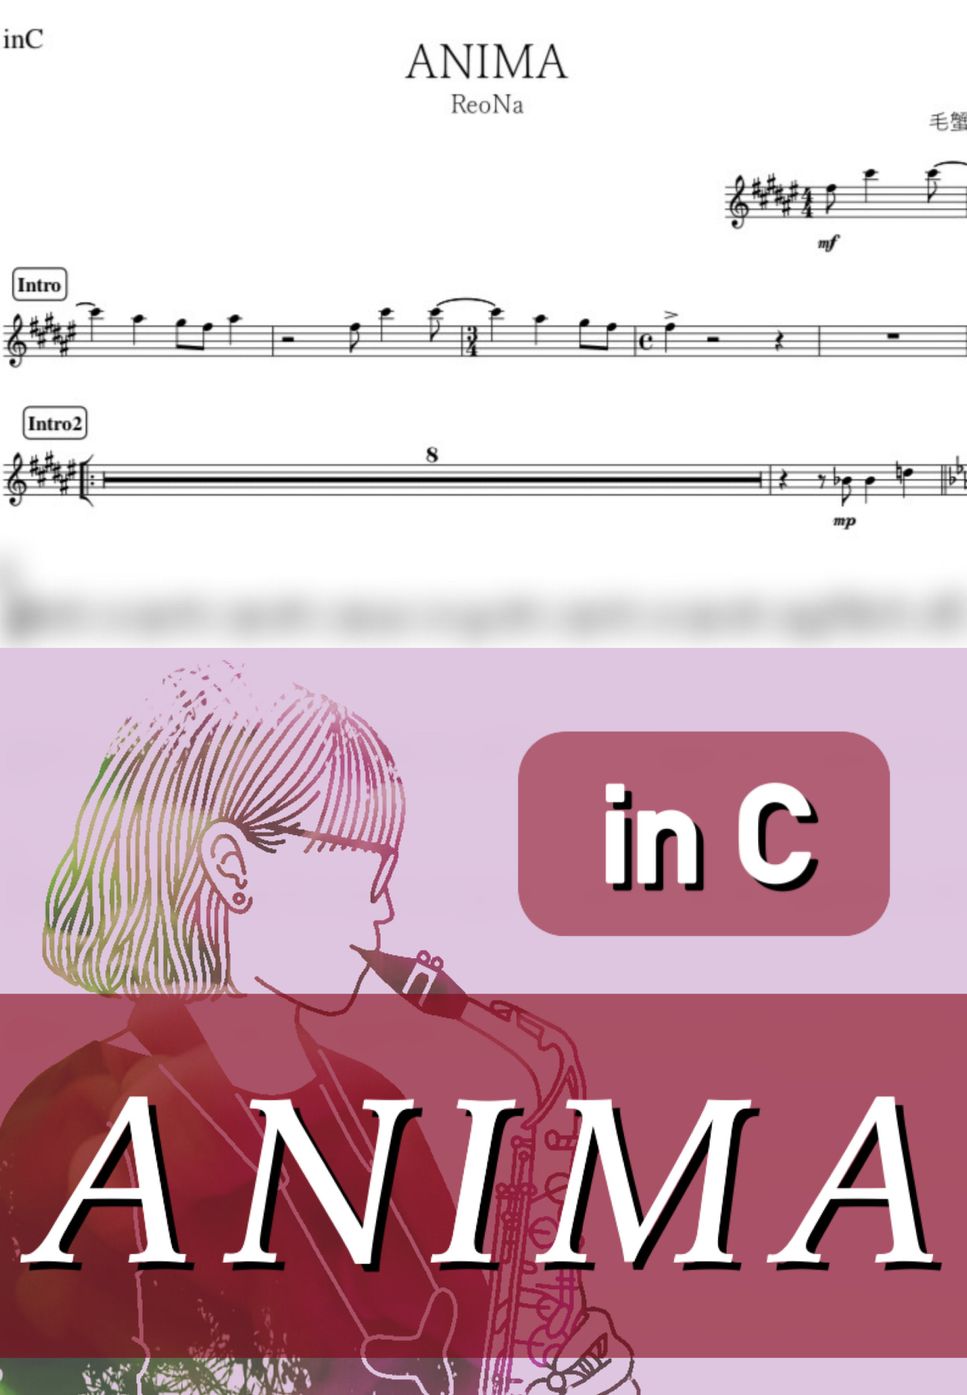 ReoNa - ANIMA (C) by kanamusic